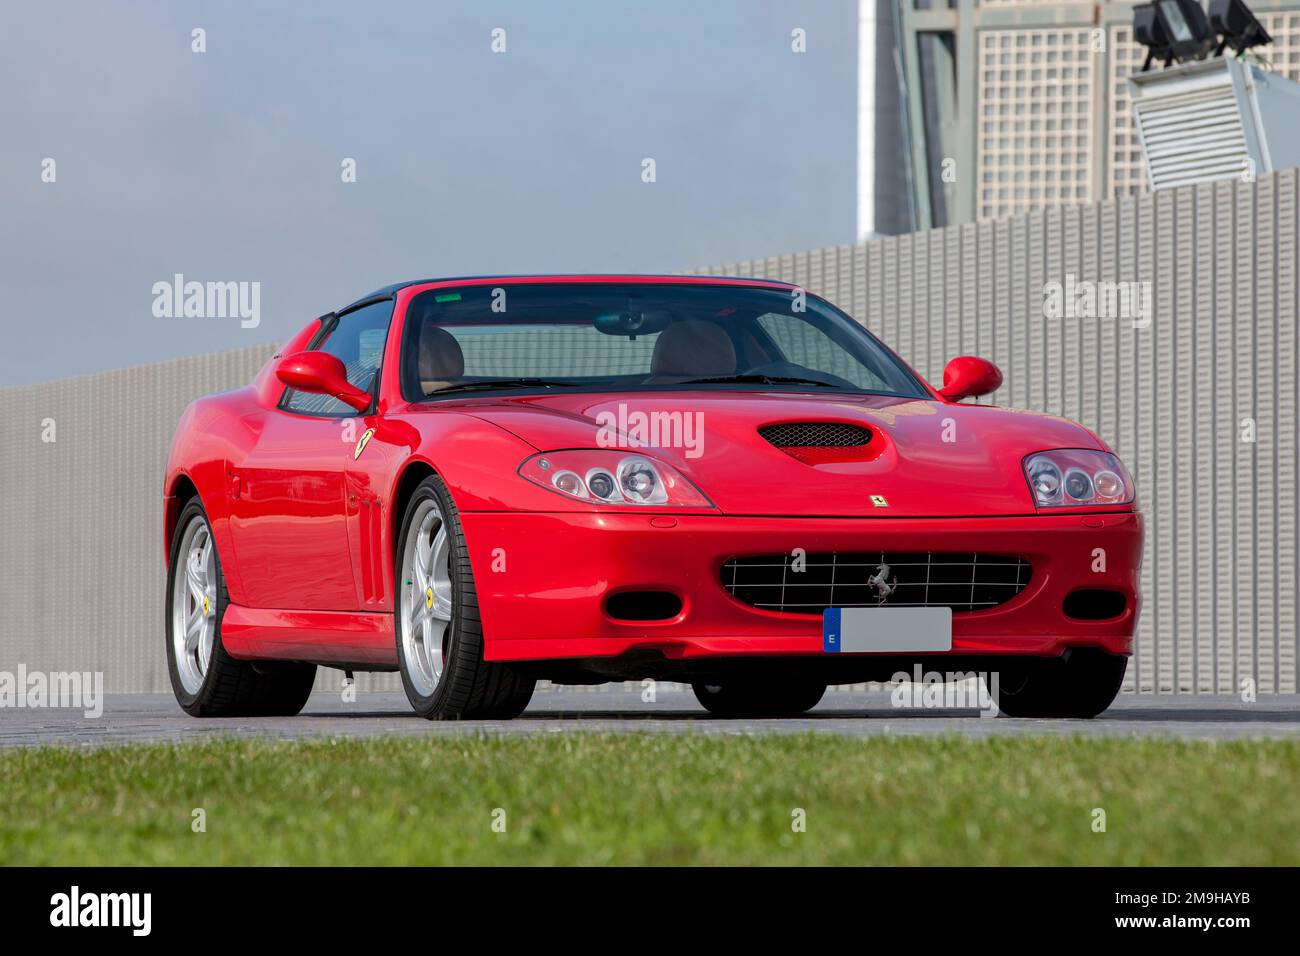 Vorderansicht des roten Ferrari 575M Superamerica Cabriolets Stockfoto